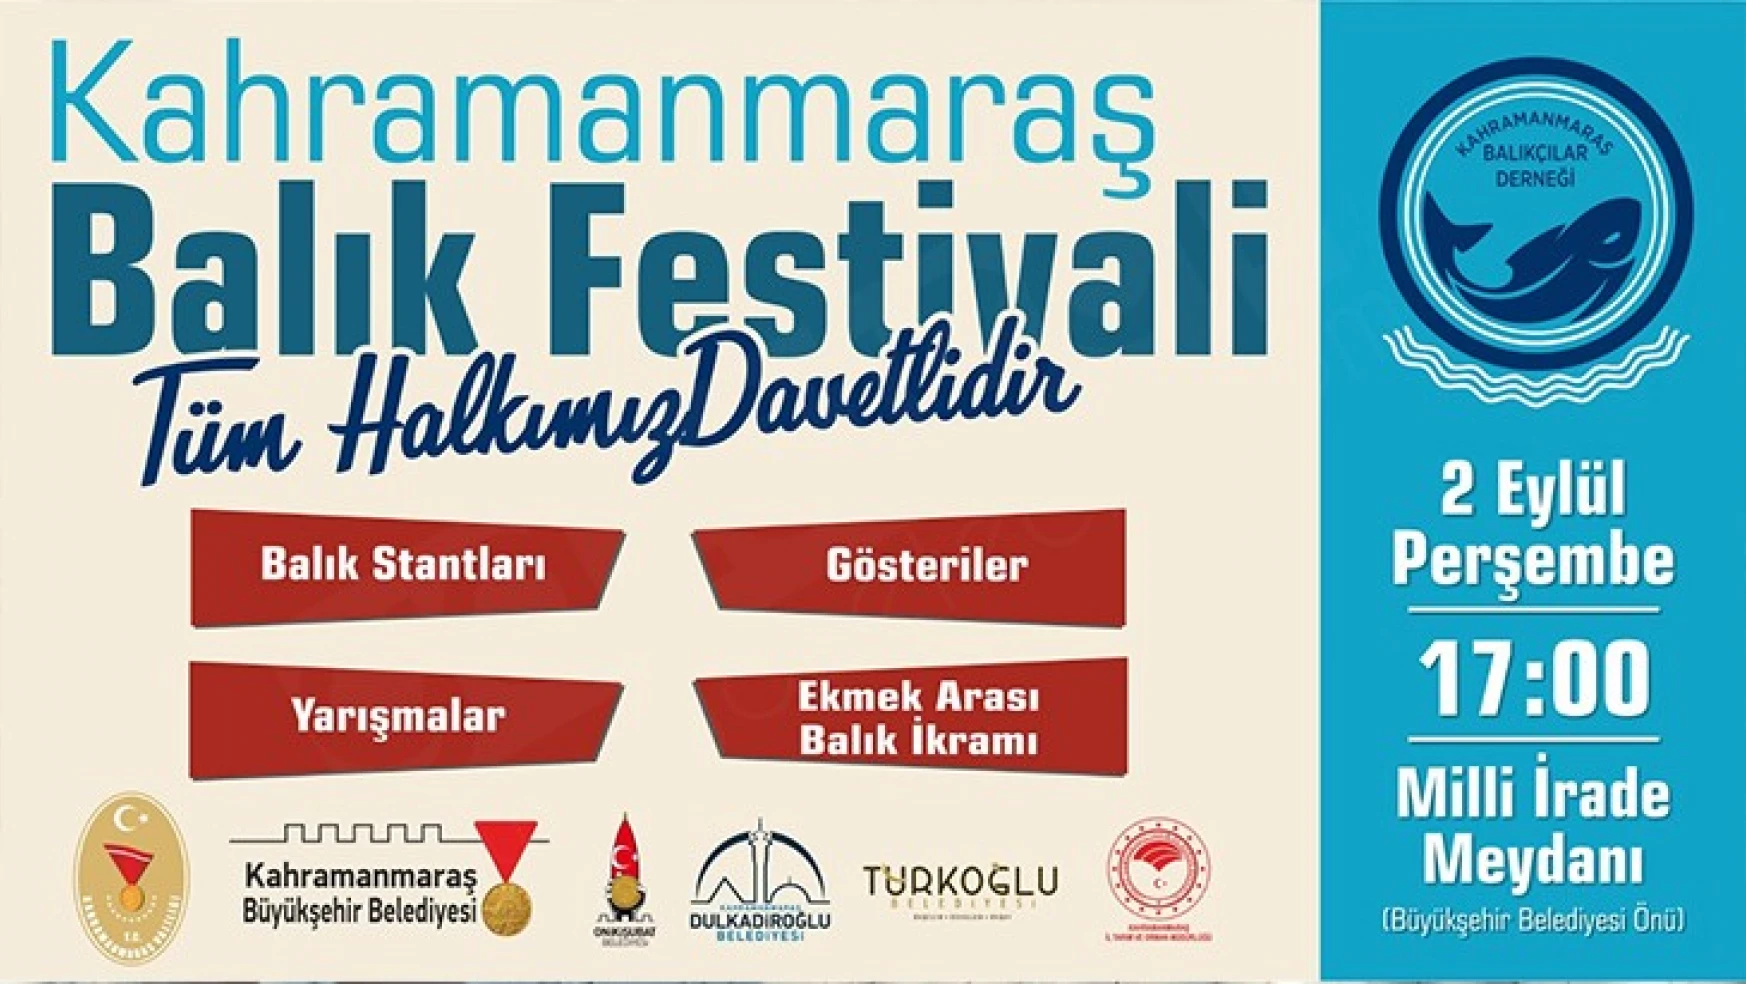 Türkiye'de ilk defa düzenlenecek olan Balık Festivali 2 Eylül'de başlıyor